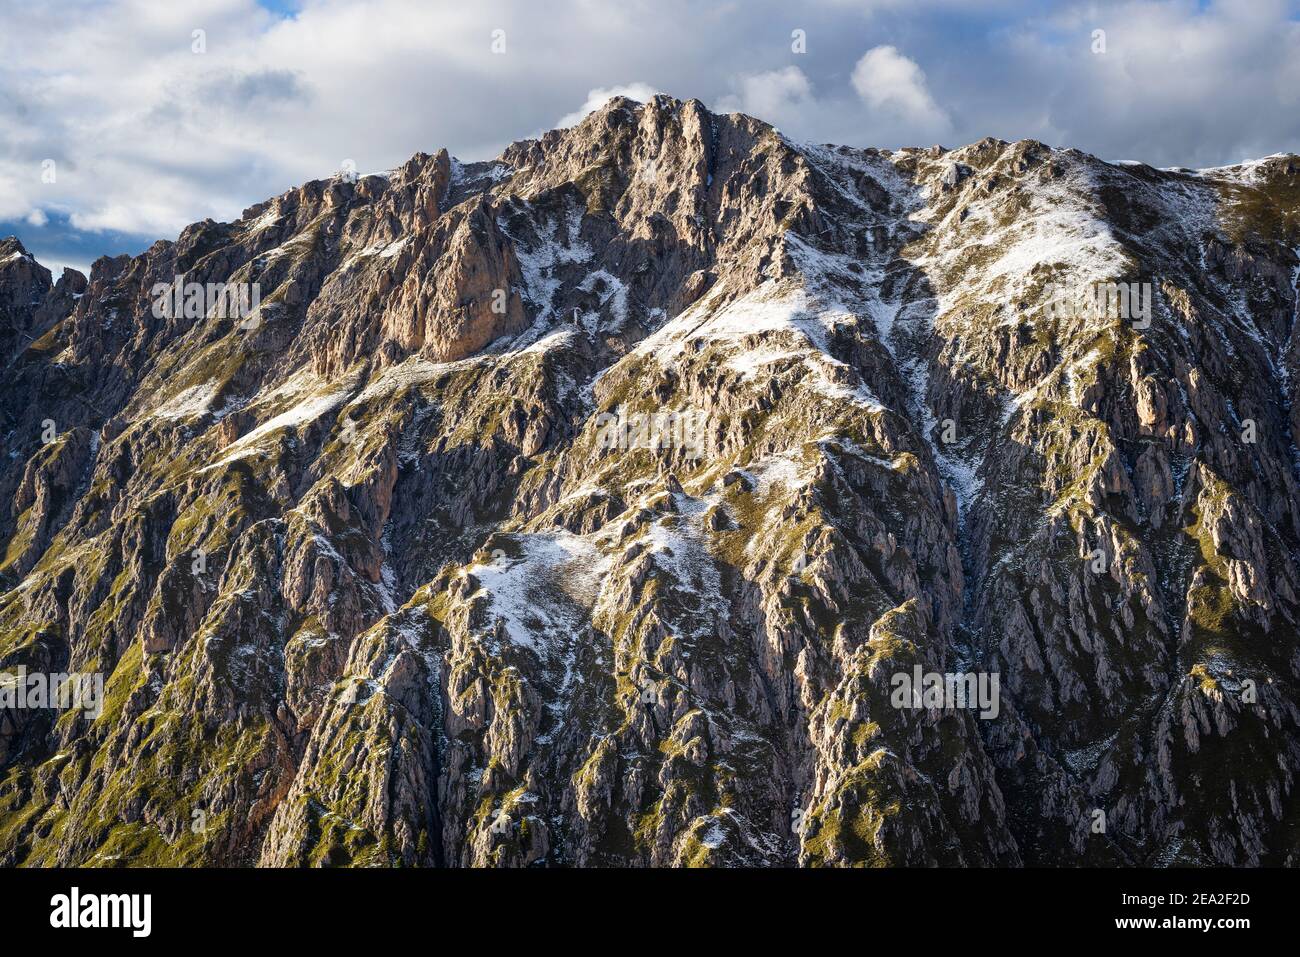 Foreste montane autunnali, rocce, falesie e cime del Gruppo Villnößer Geisler sopra la Val Villnöß nelle Dolomiti, Alto Adige, Italia Foto Stock